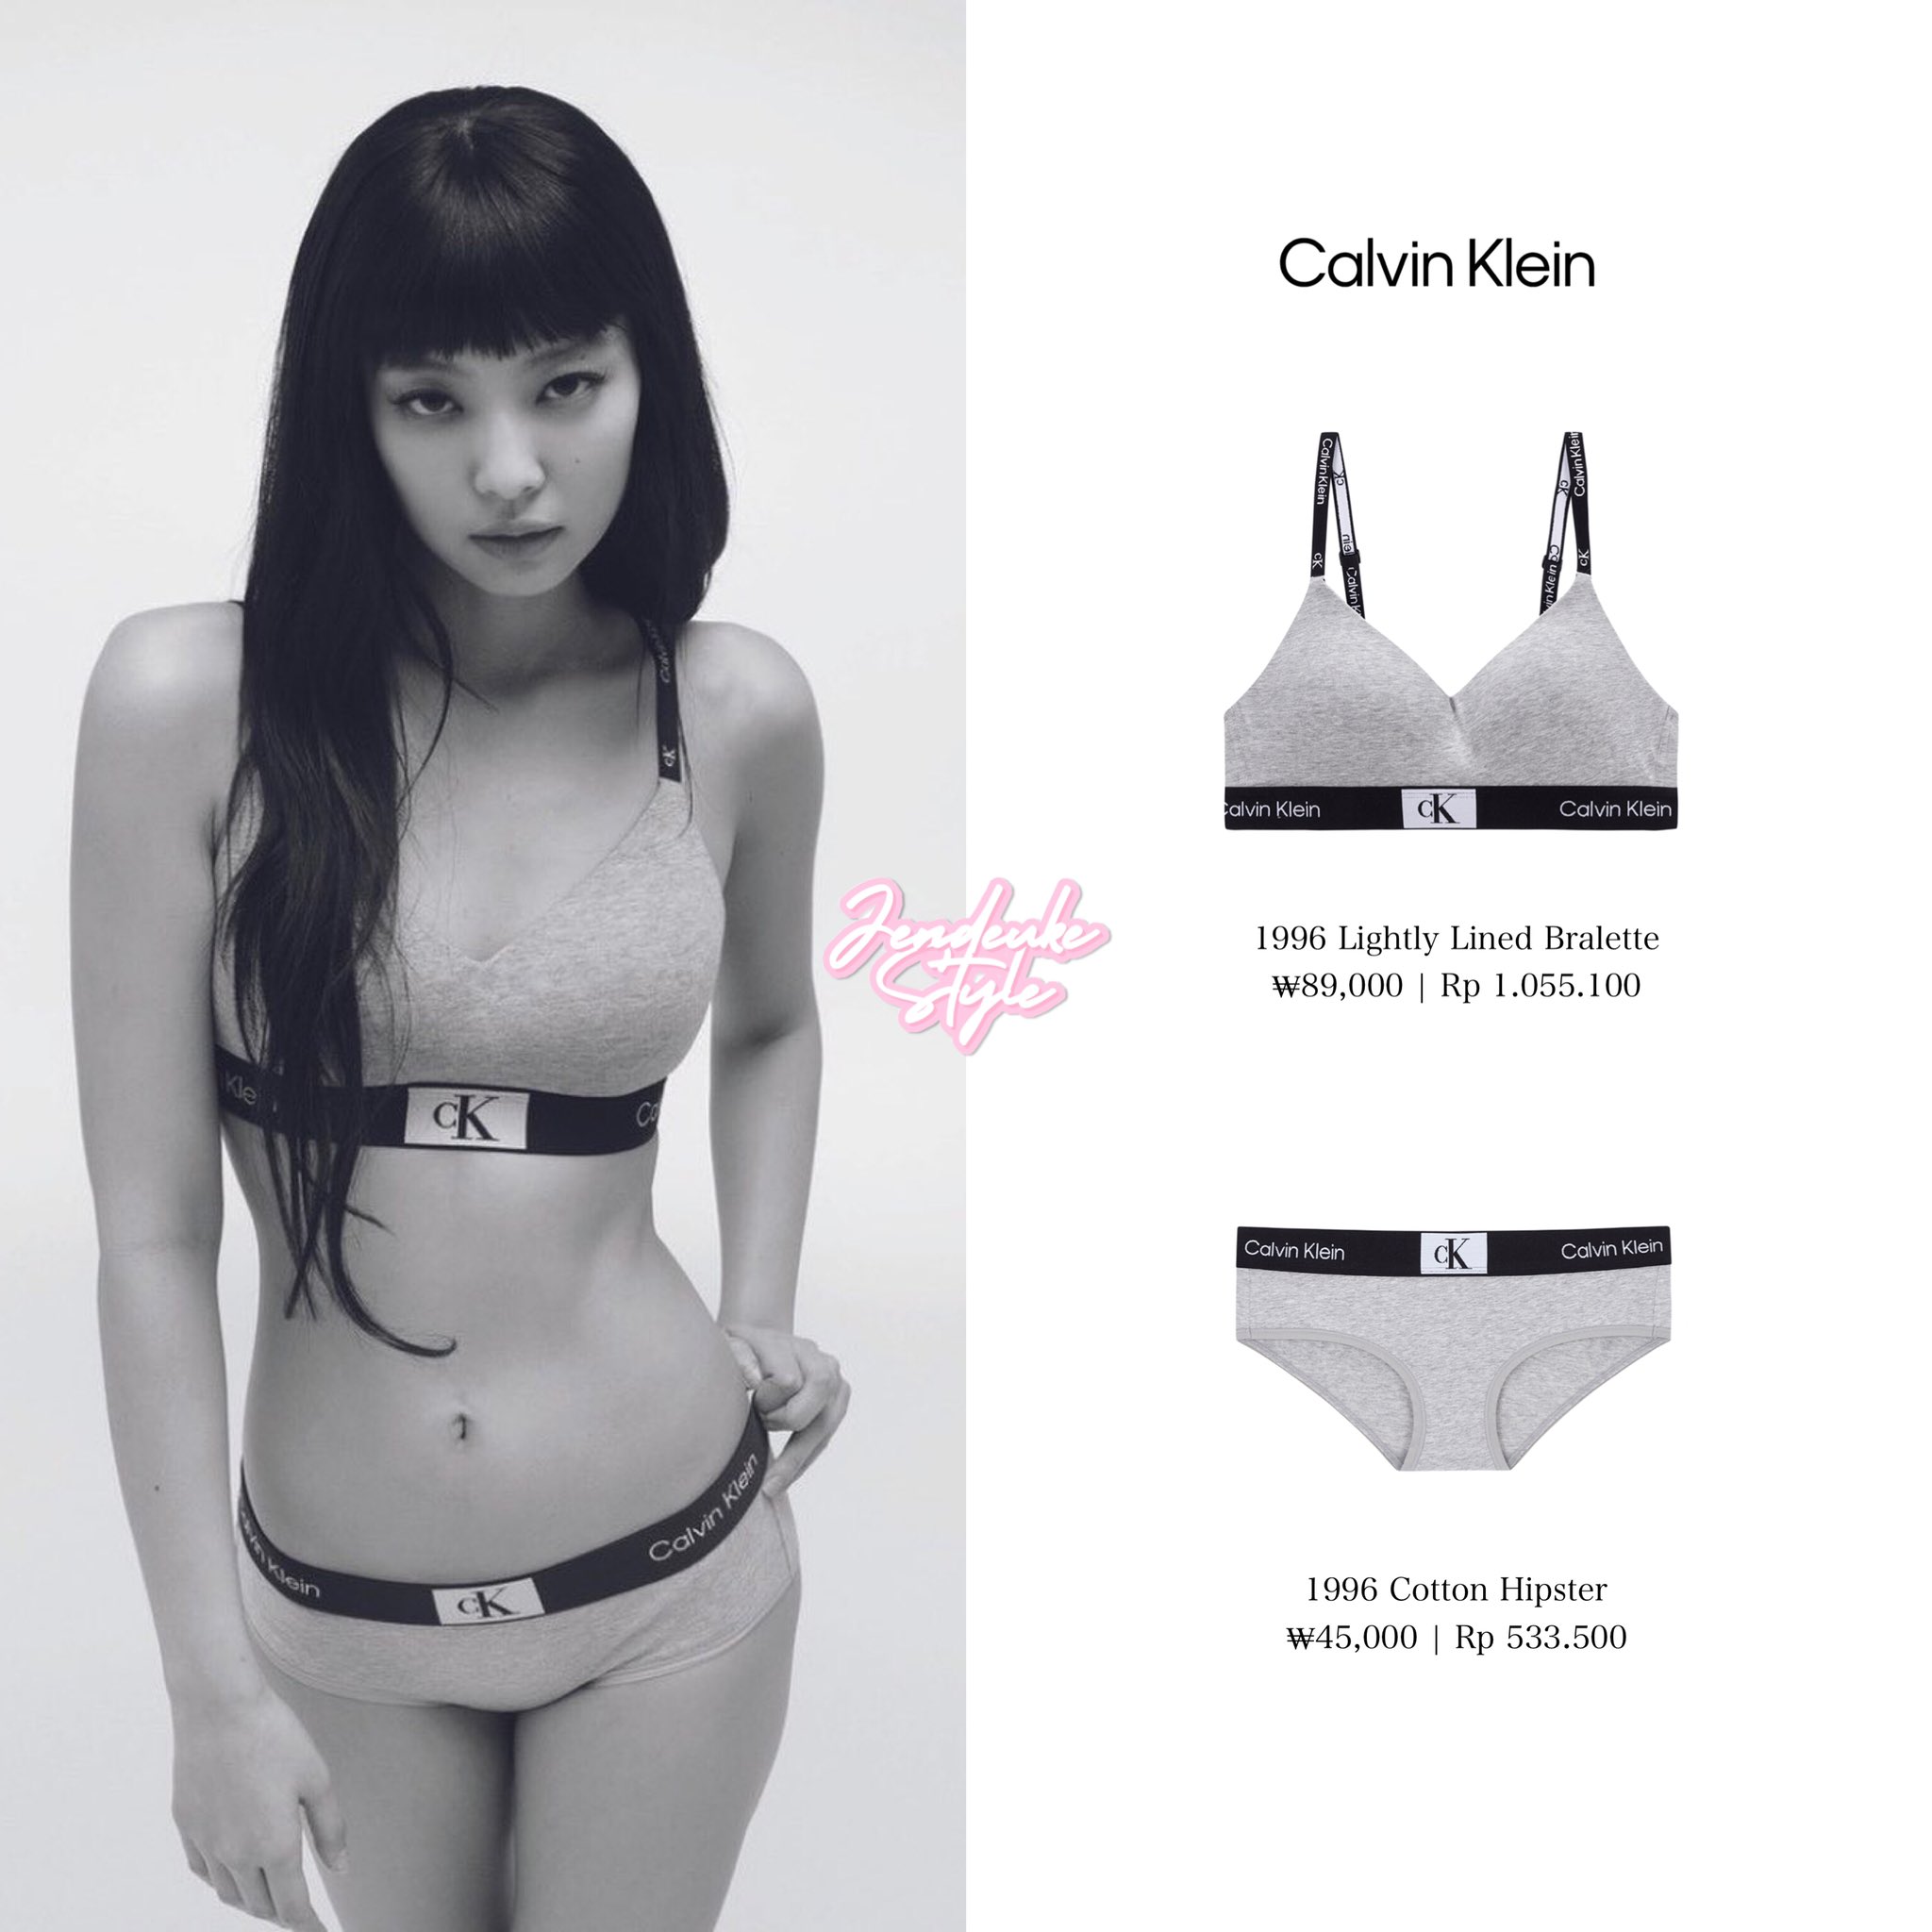 M]BNWT Calvin Klein Jennie 96 matching undies, Women's Fashion